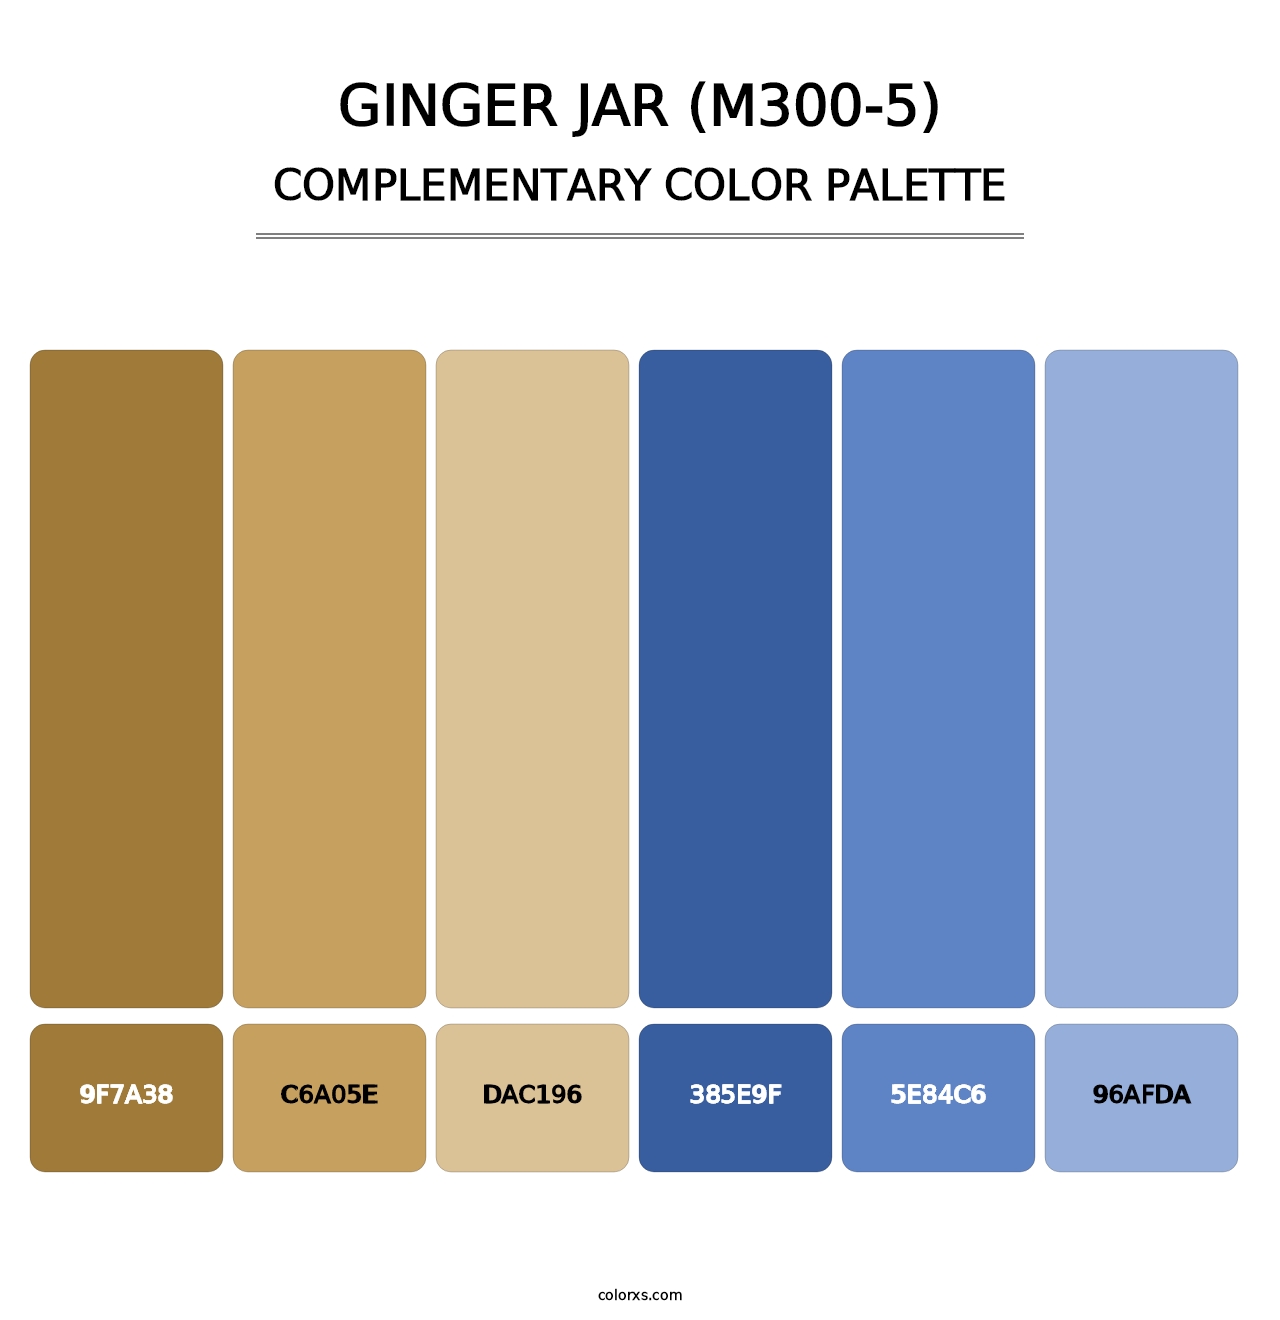 Ginger Jar (M300-5) - Complementary Color Palette